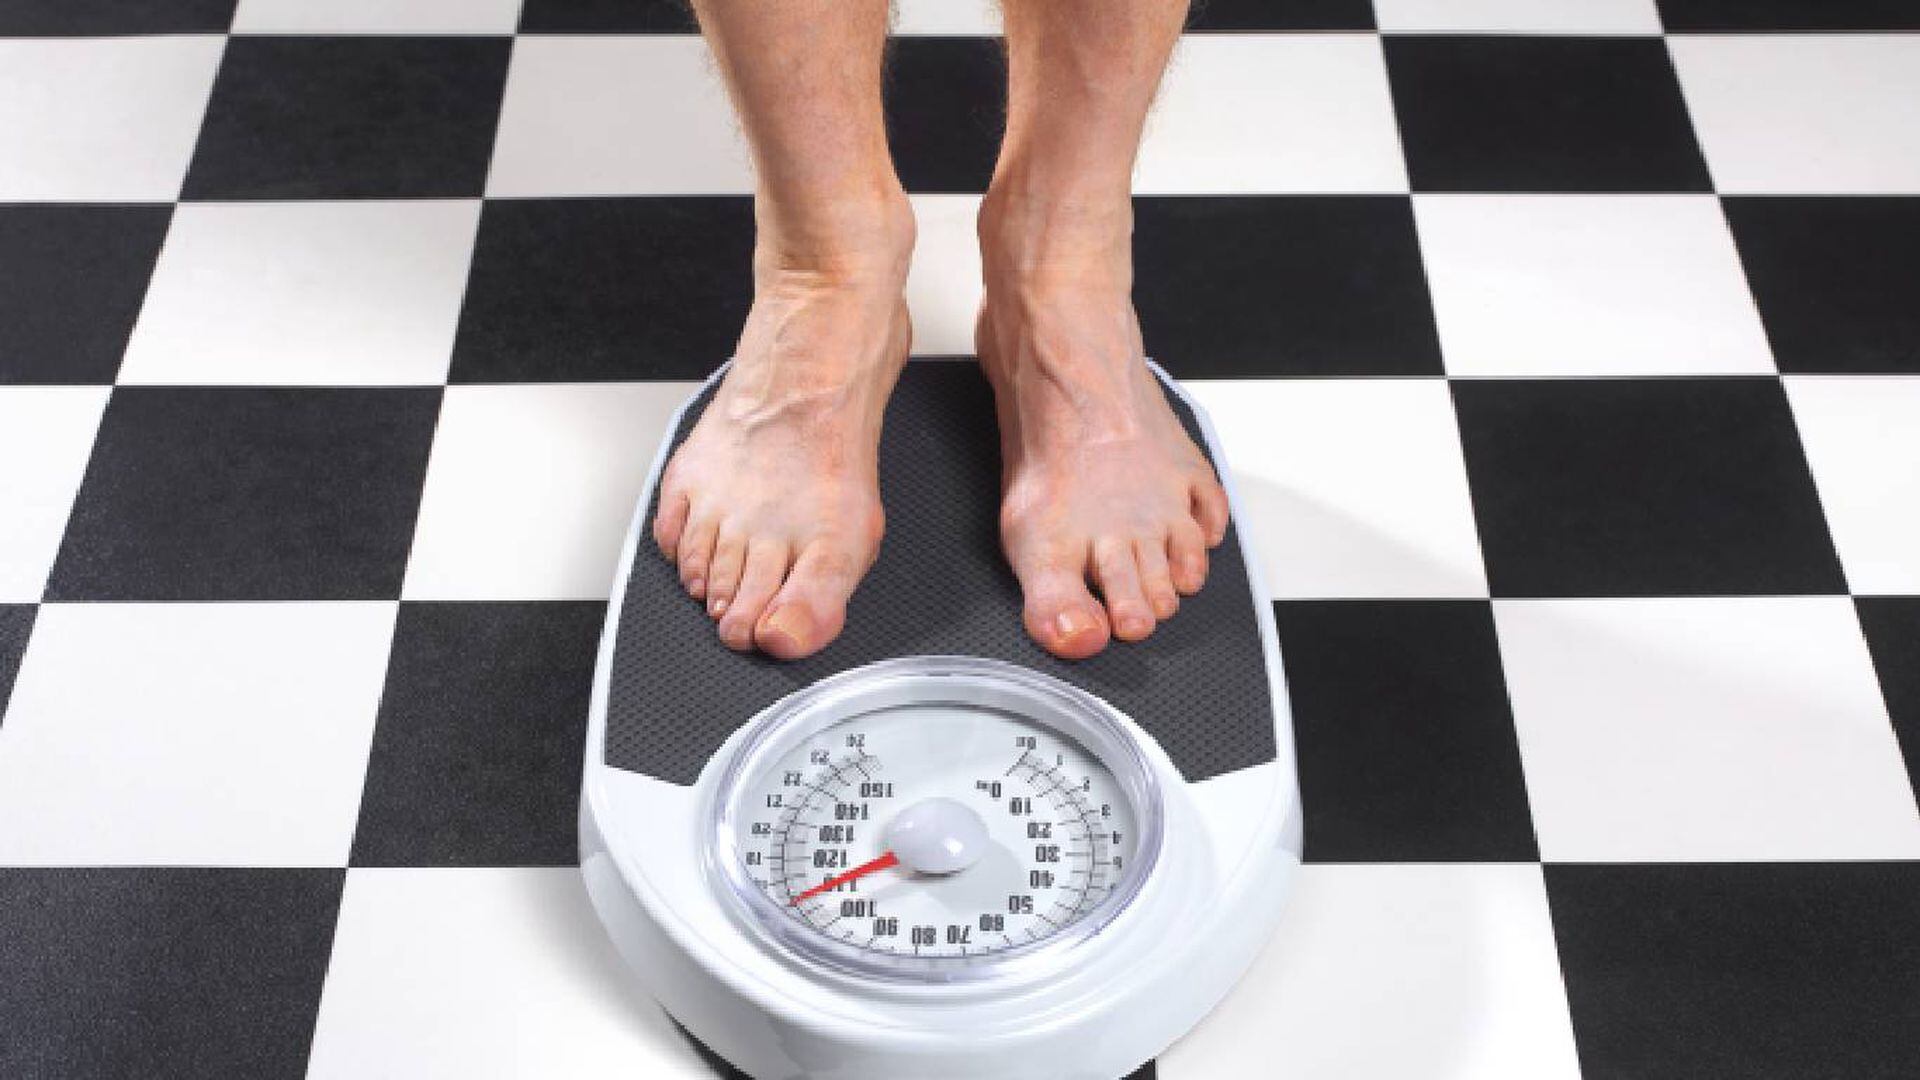 Perder peso: consejos para adelgazar rápido y sin riesgos - Foto 1